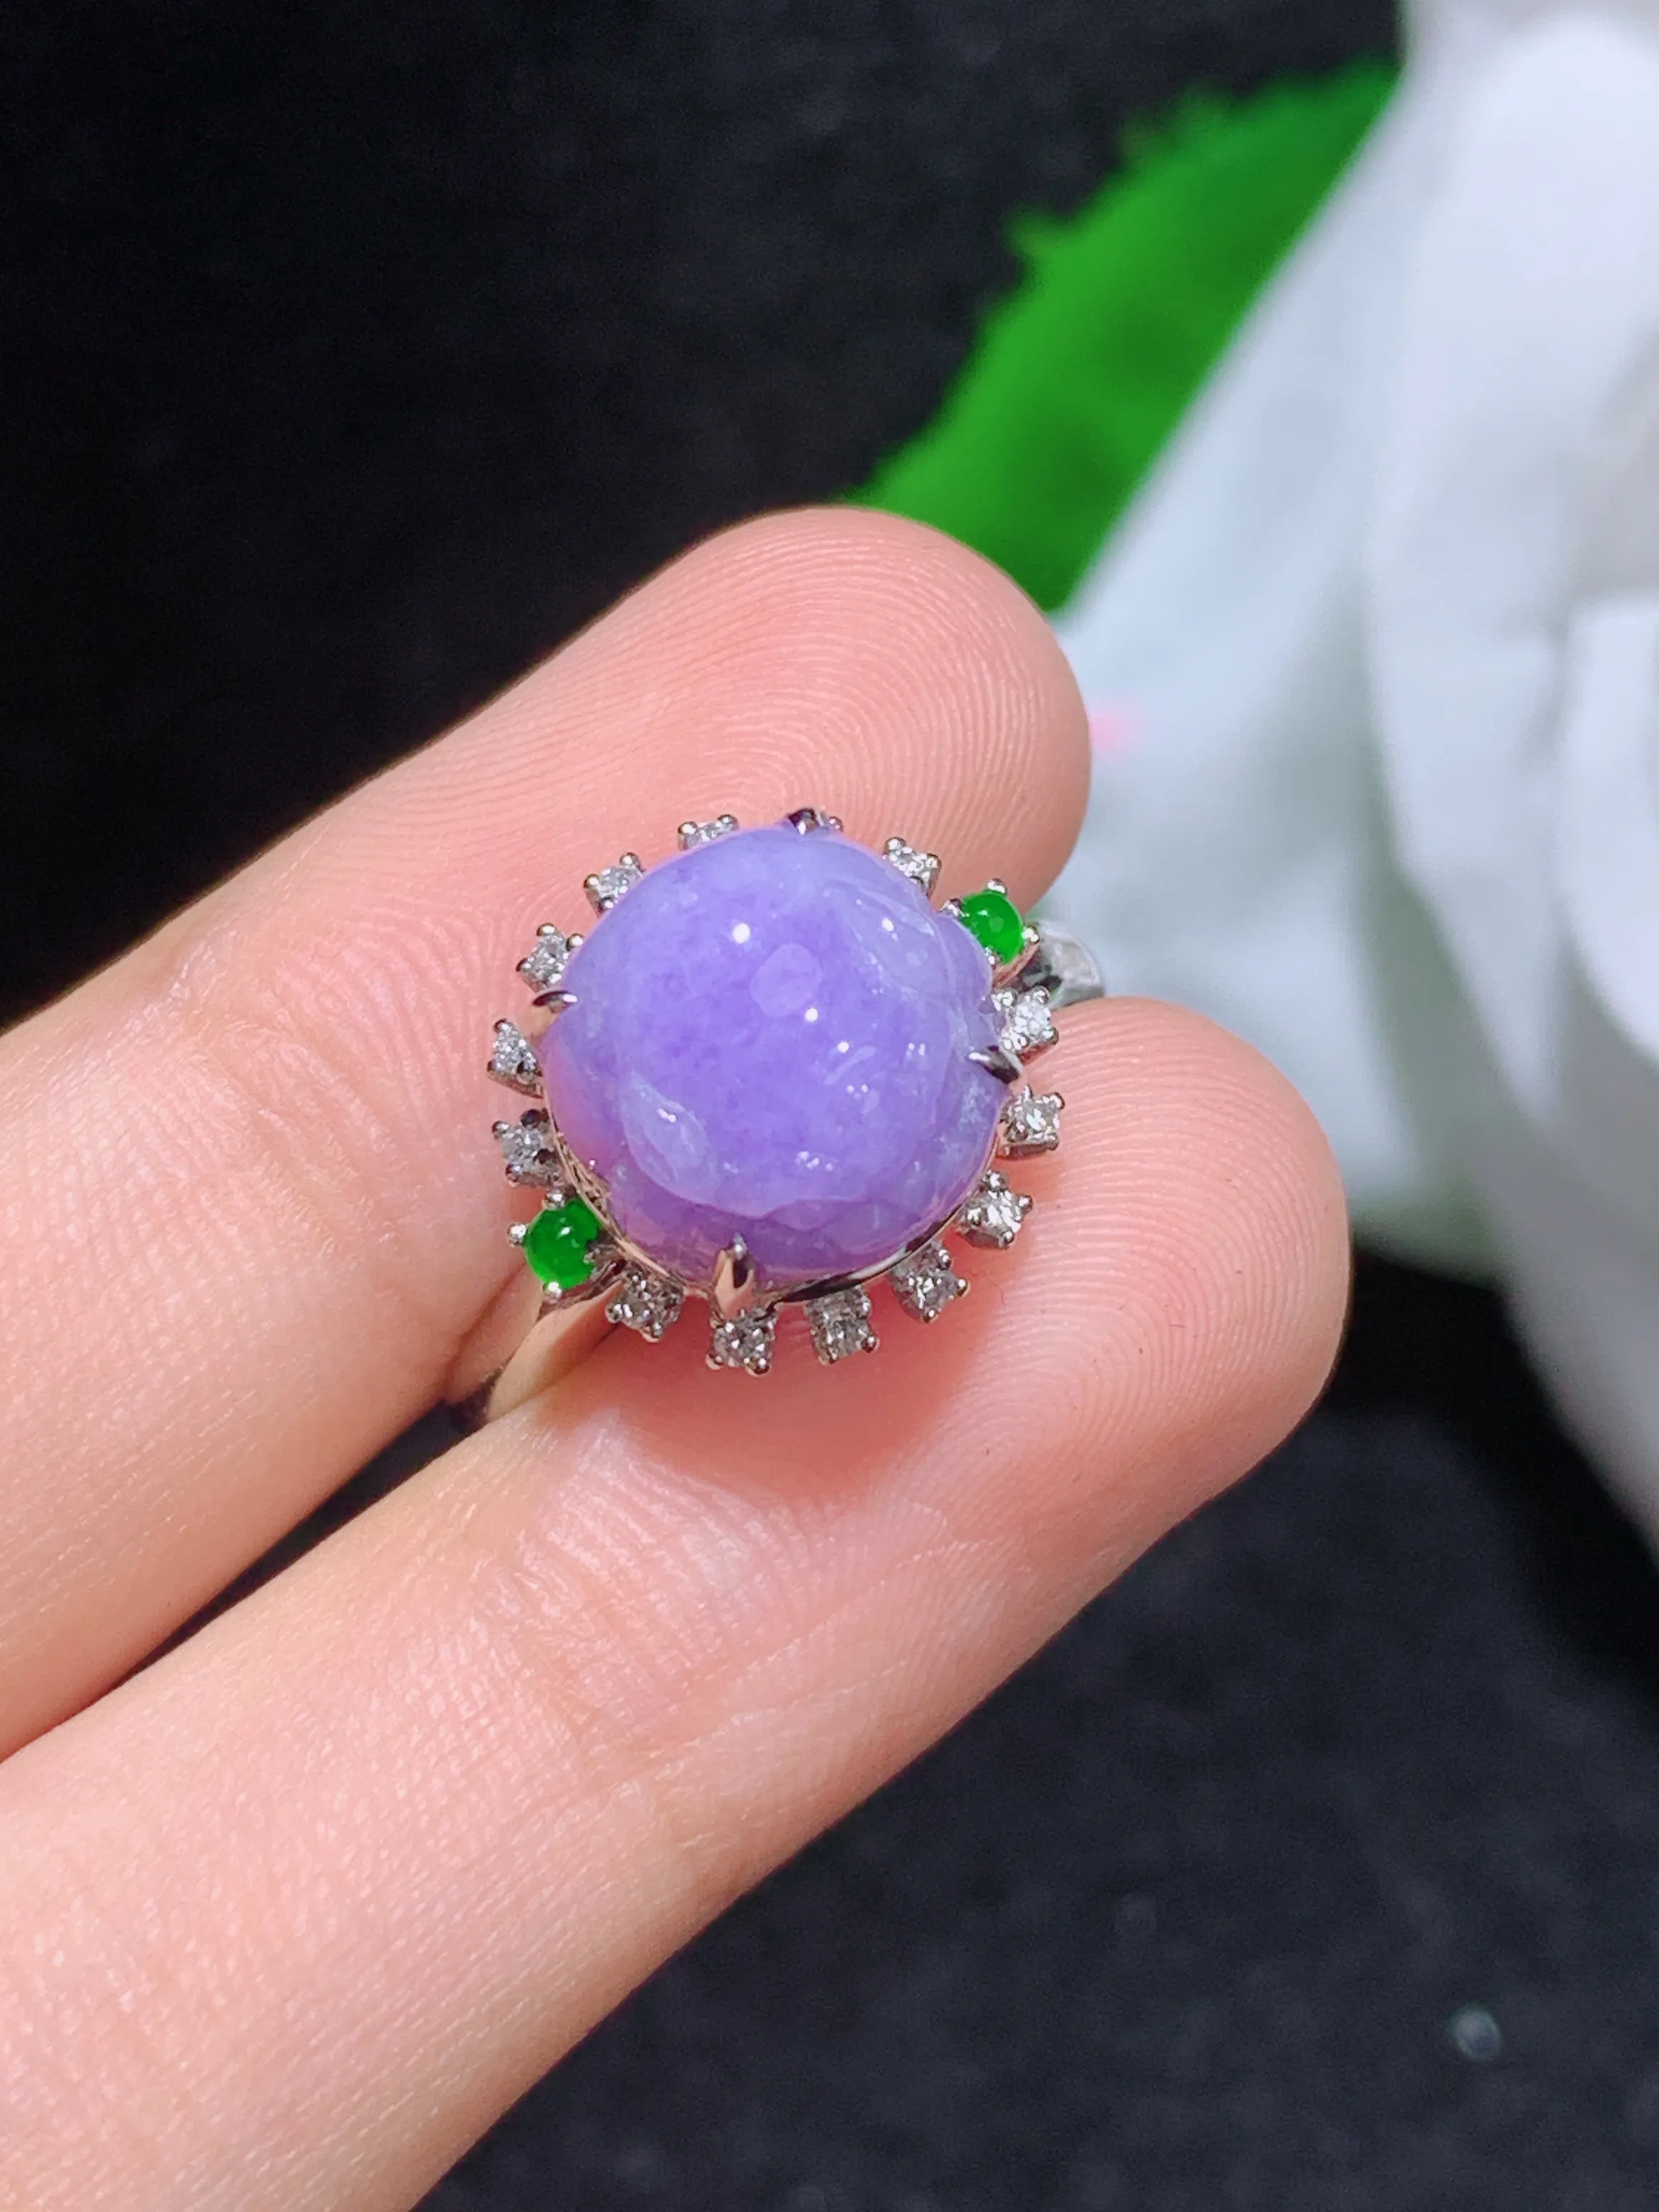 紫罗兰貔貅戒指，18k金镶嵌，颜色清爽，水润，整体规格：12.9-14